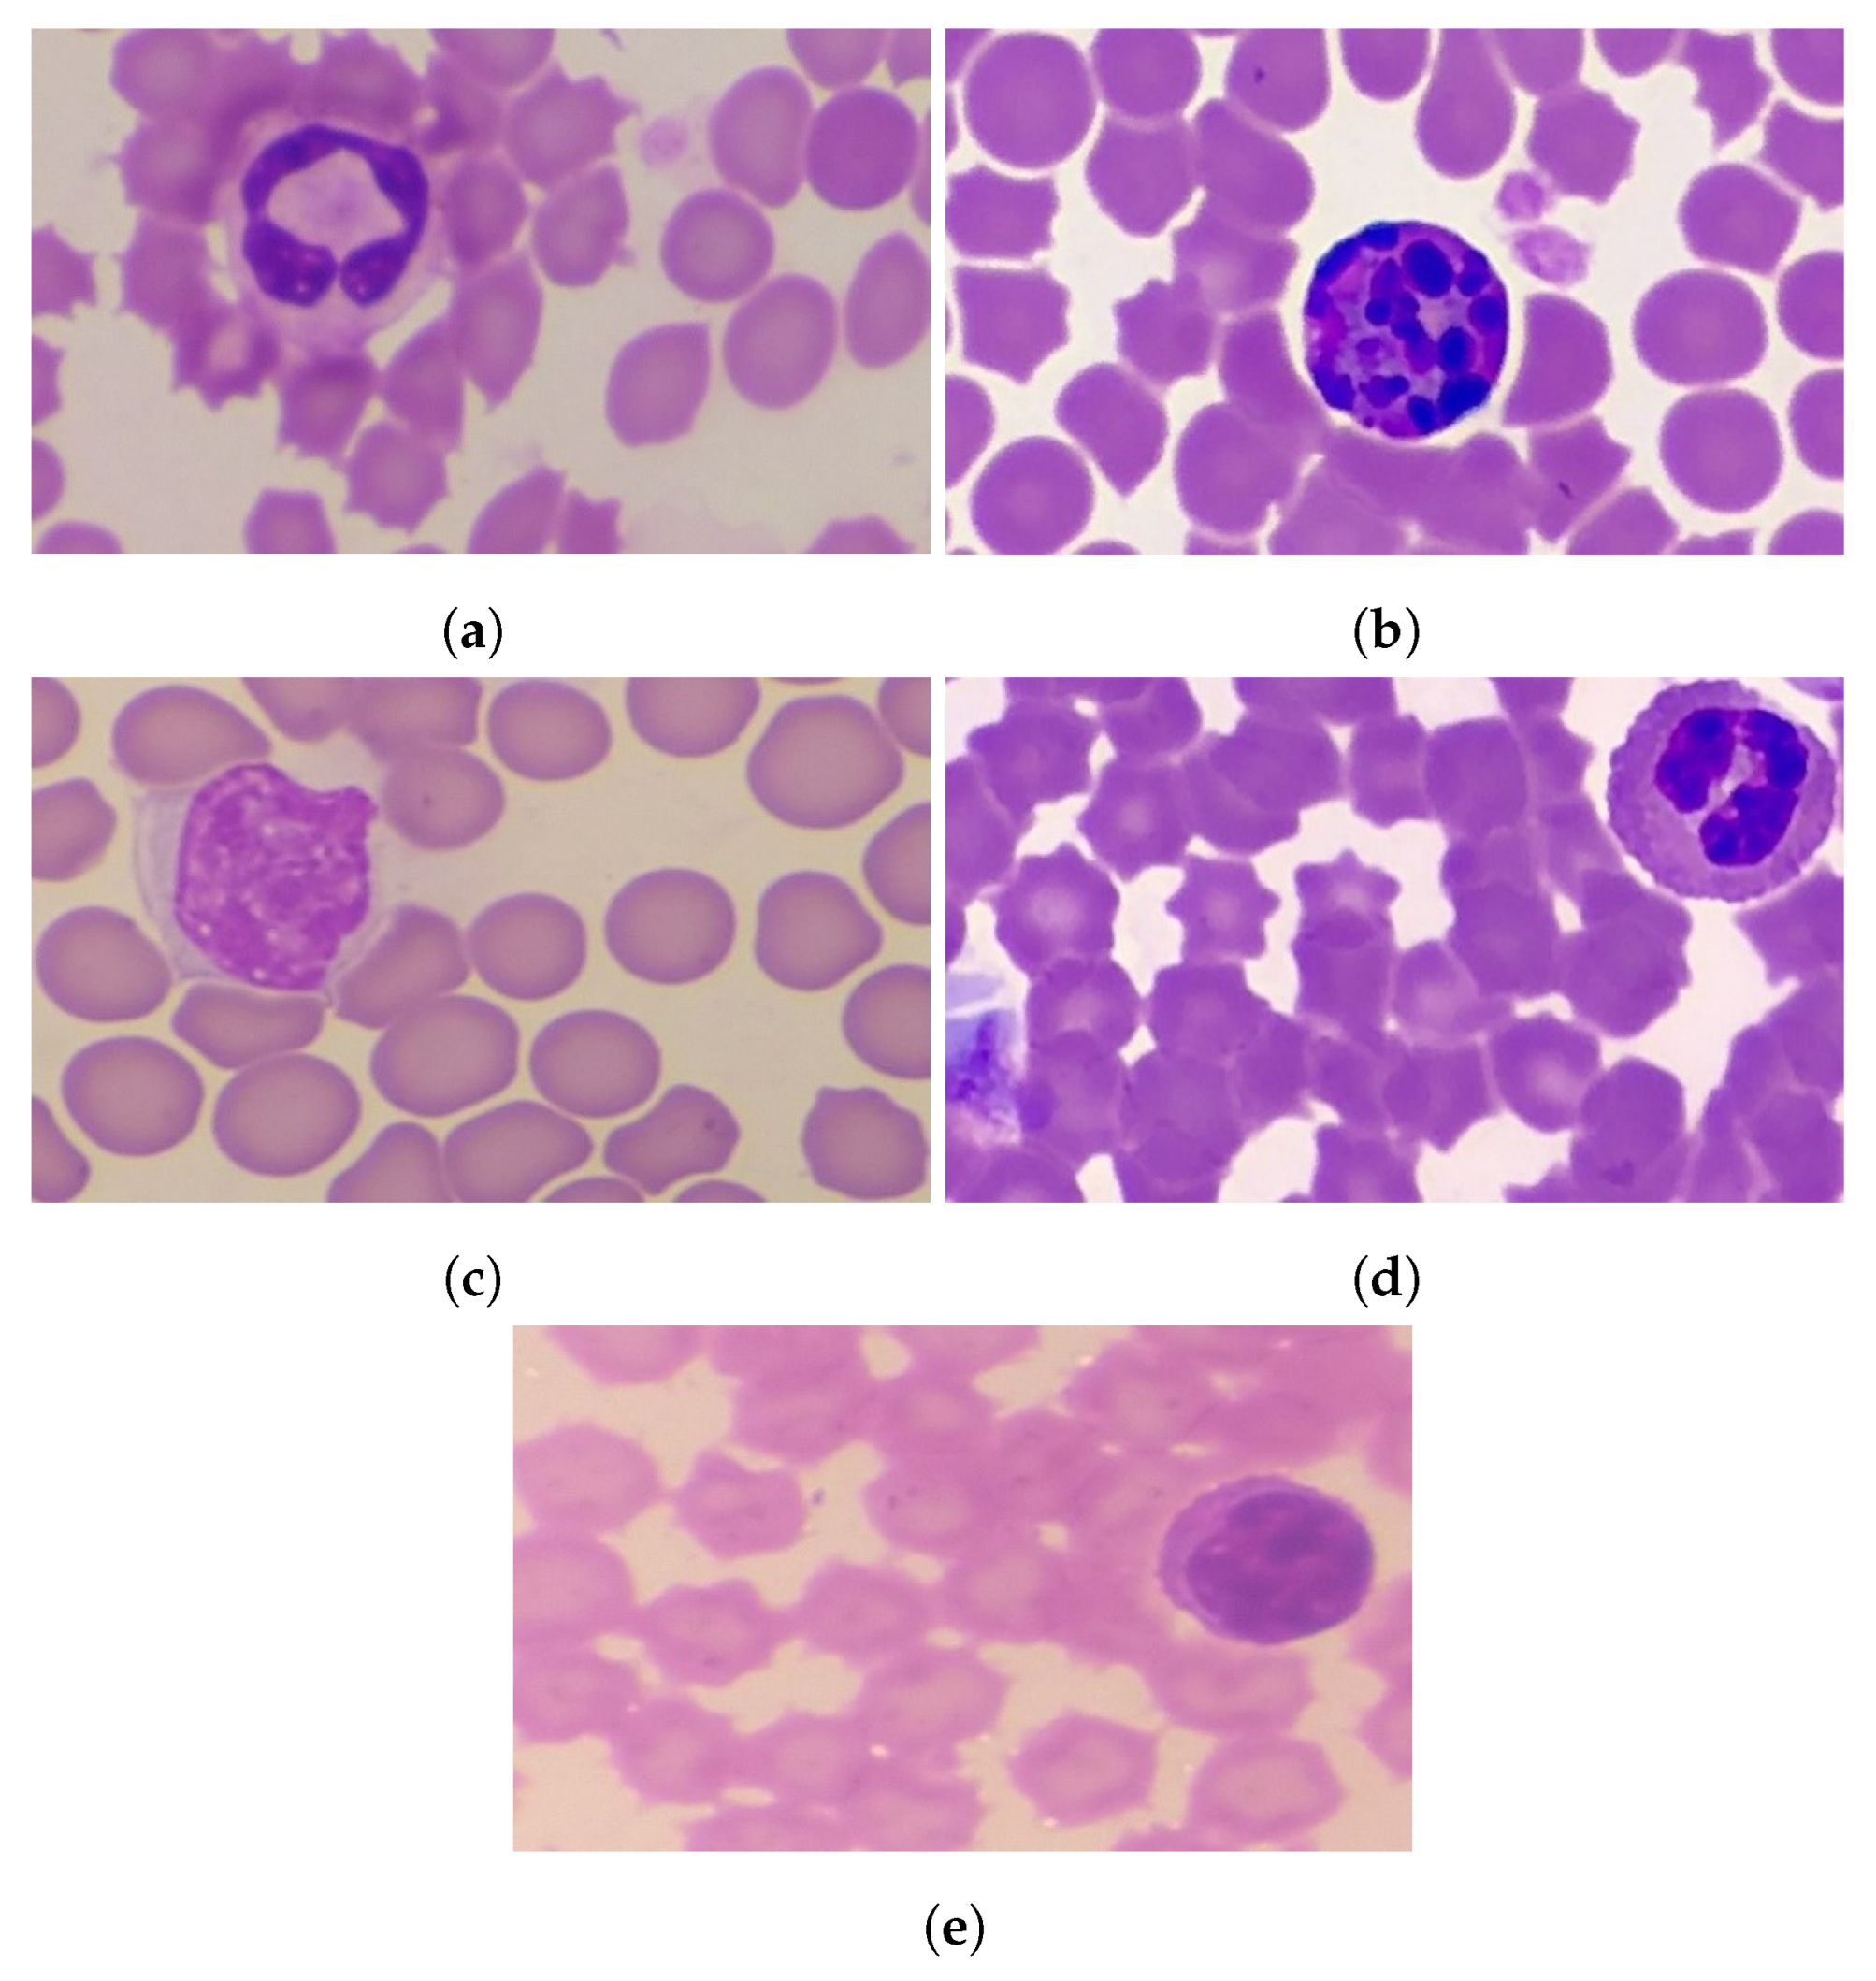 leukocytes histology